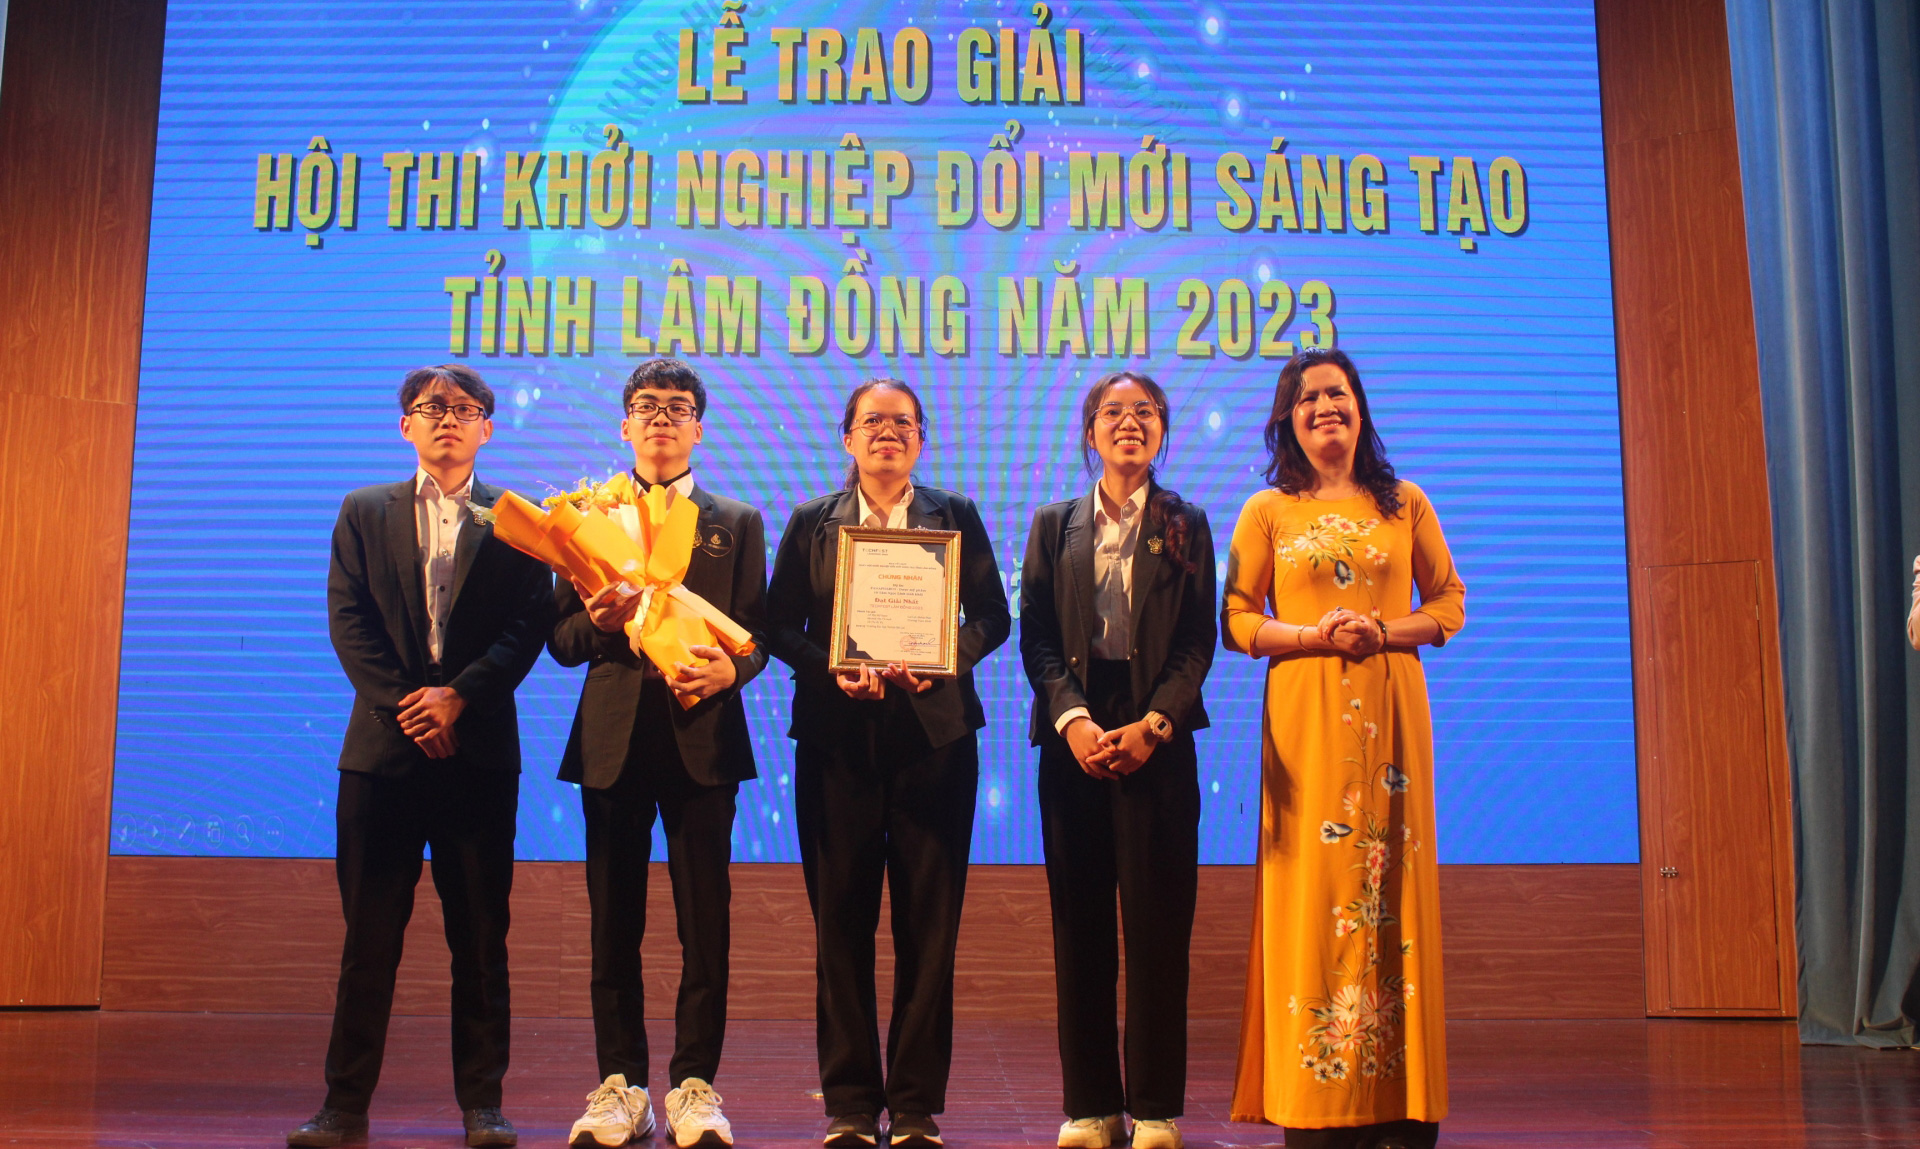 Chung kết Cuộc thi Khởi nghiệp đổi mới sáng tạo tỉnh Lâm Đồng 2023